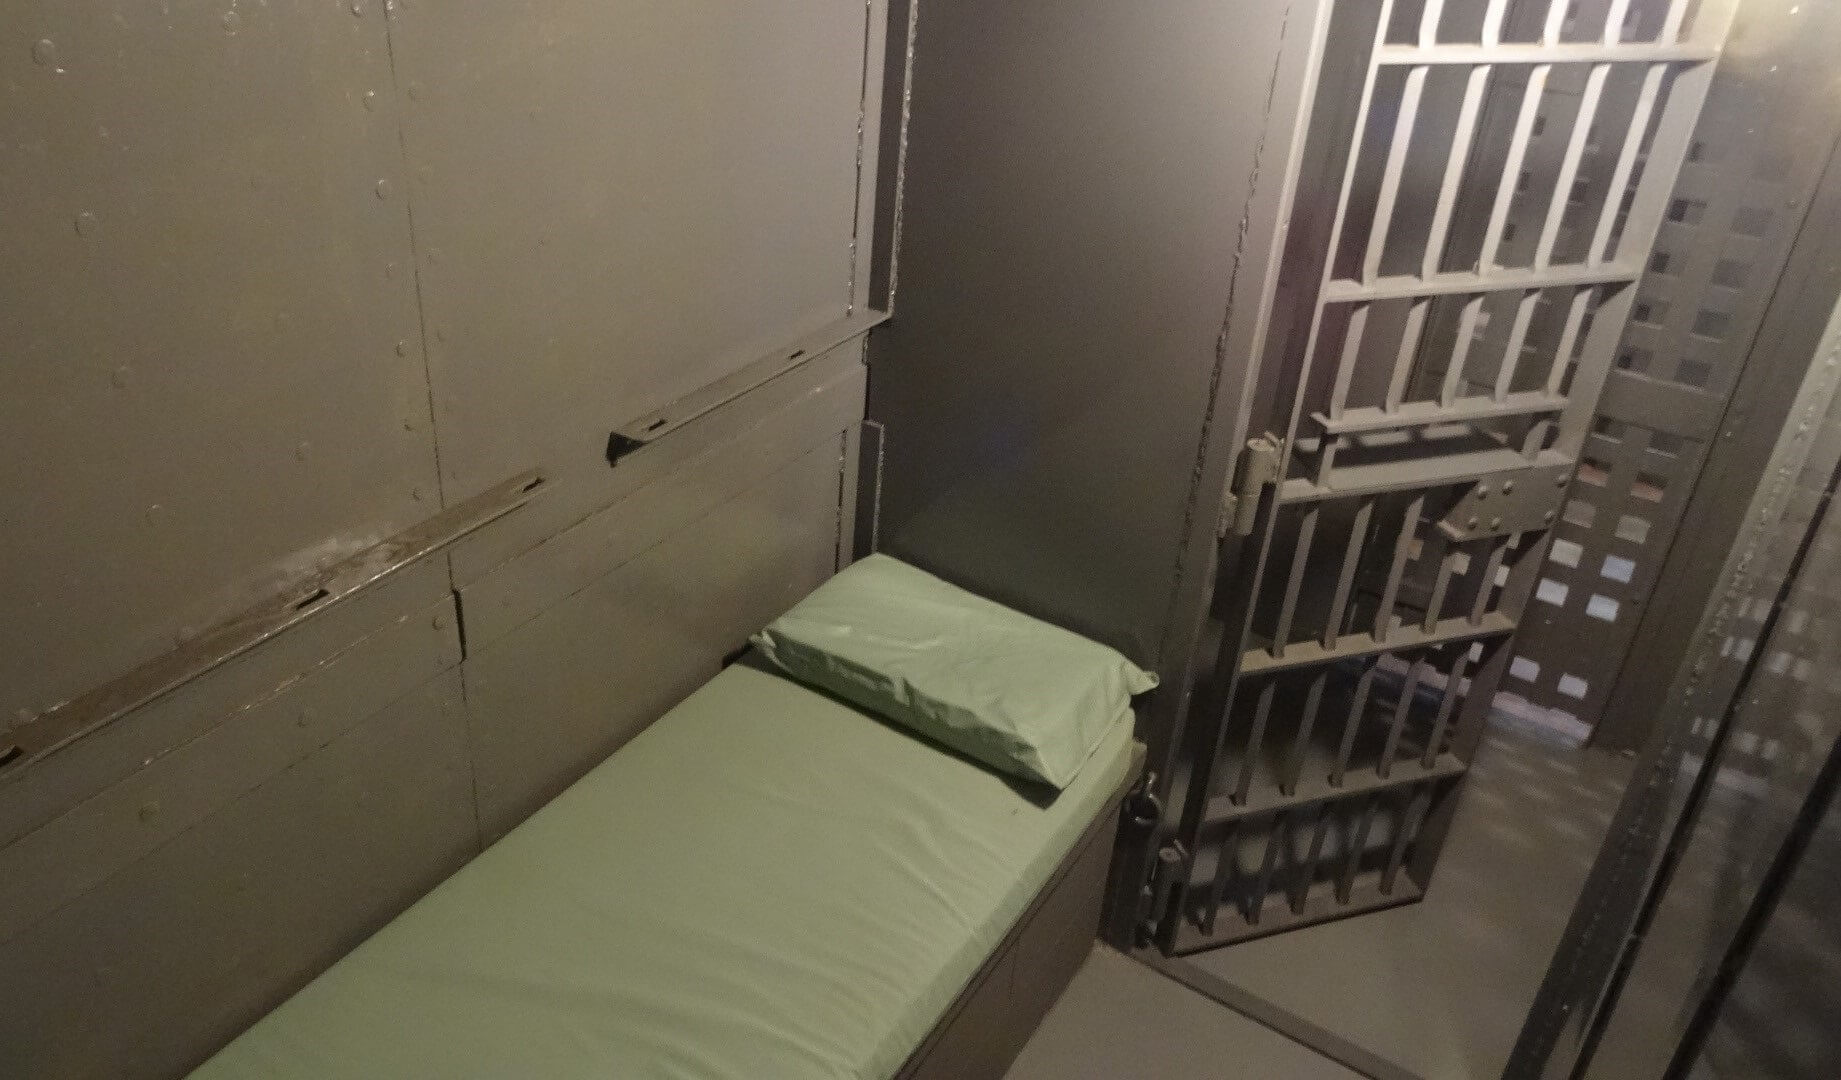 Feticismo per le carceri: "Franklin County Historic Jail", il luogo per chi ama i giochi di ruolo in prigione - cella - Gay.it